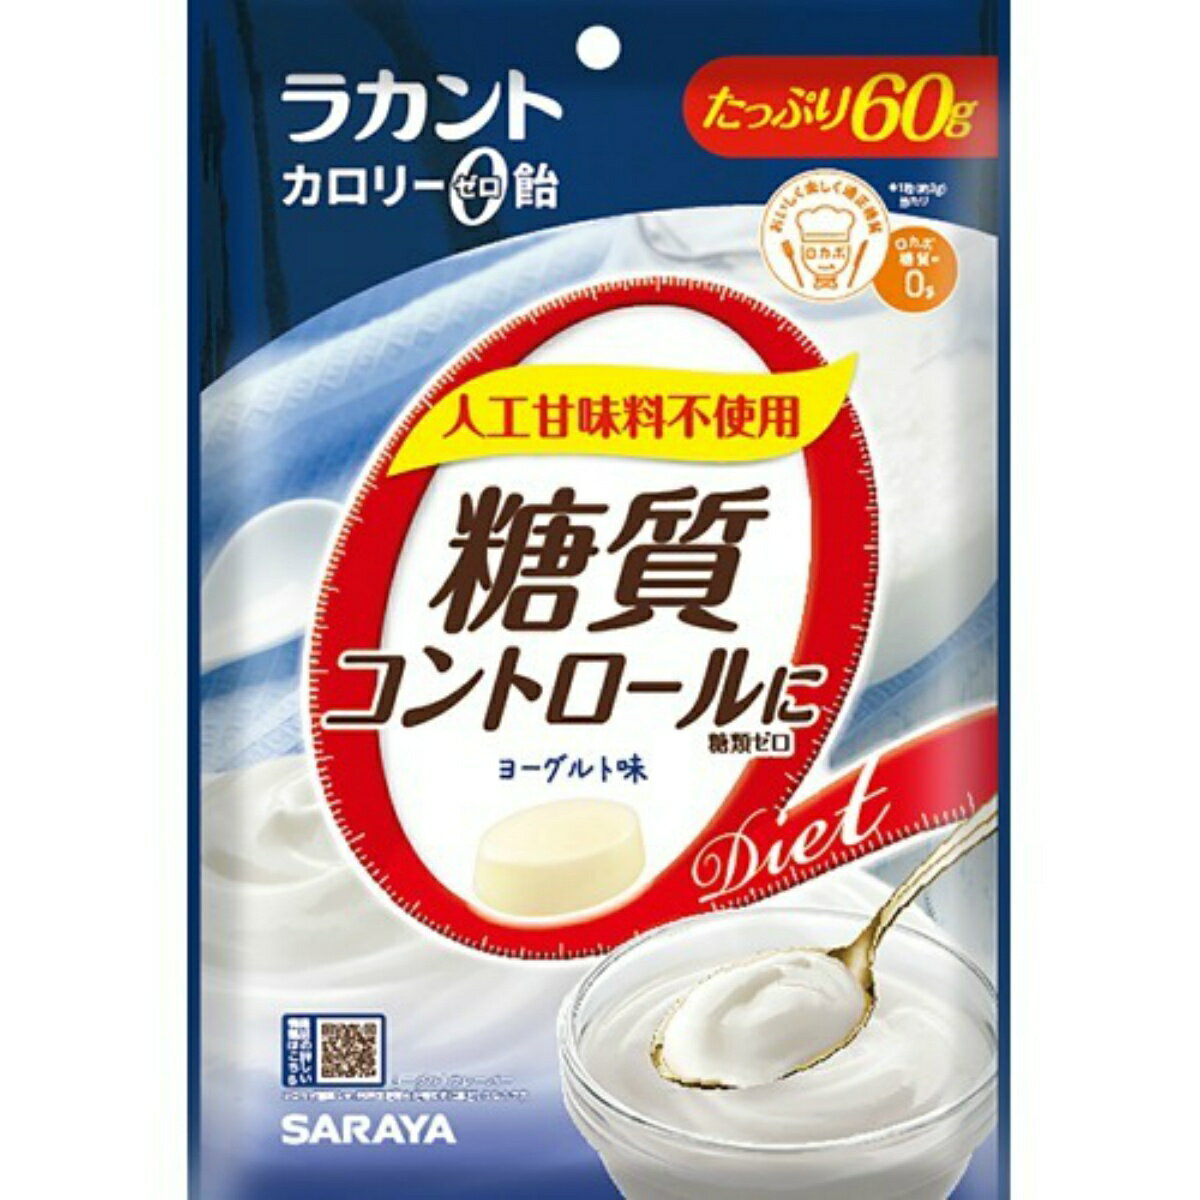 【メール便送料込】サラヤ ラカント カロリーゼロ飴 ヨーグルト味 60g